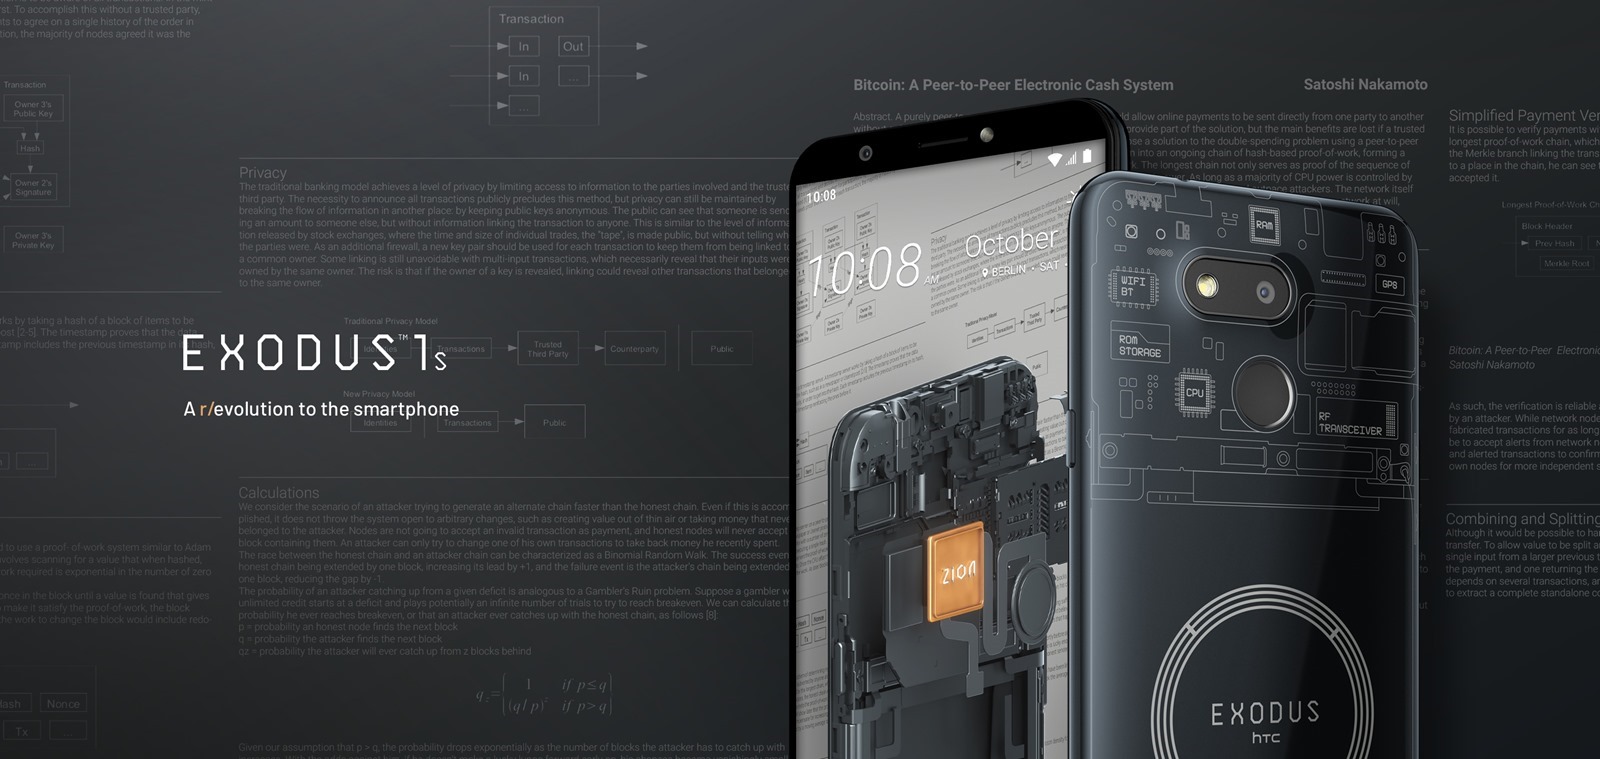 HTC 推出 EXODUS 1s 全球首款原生支援完整比特幣節點的智慧型手機 @3C 達人廖阿輝